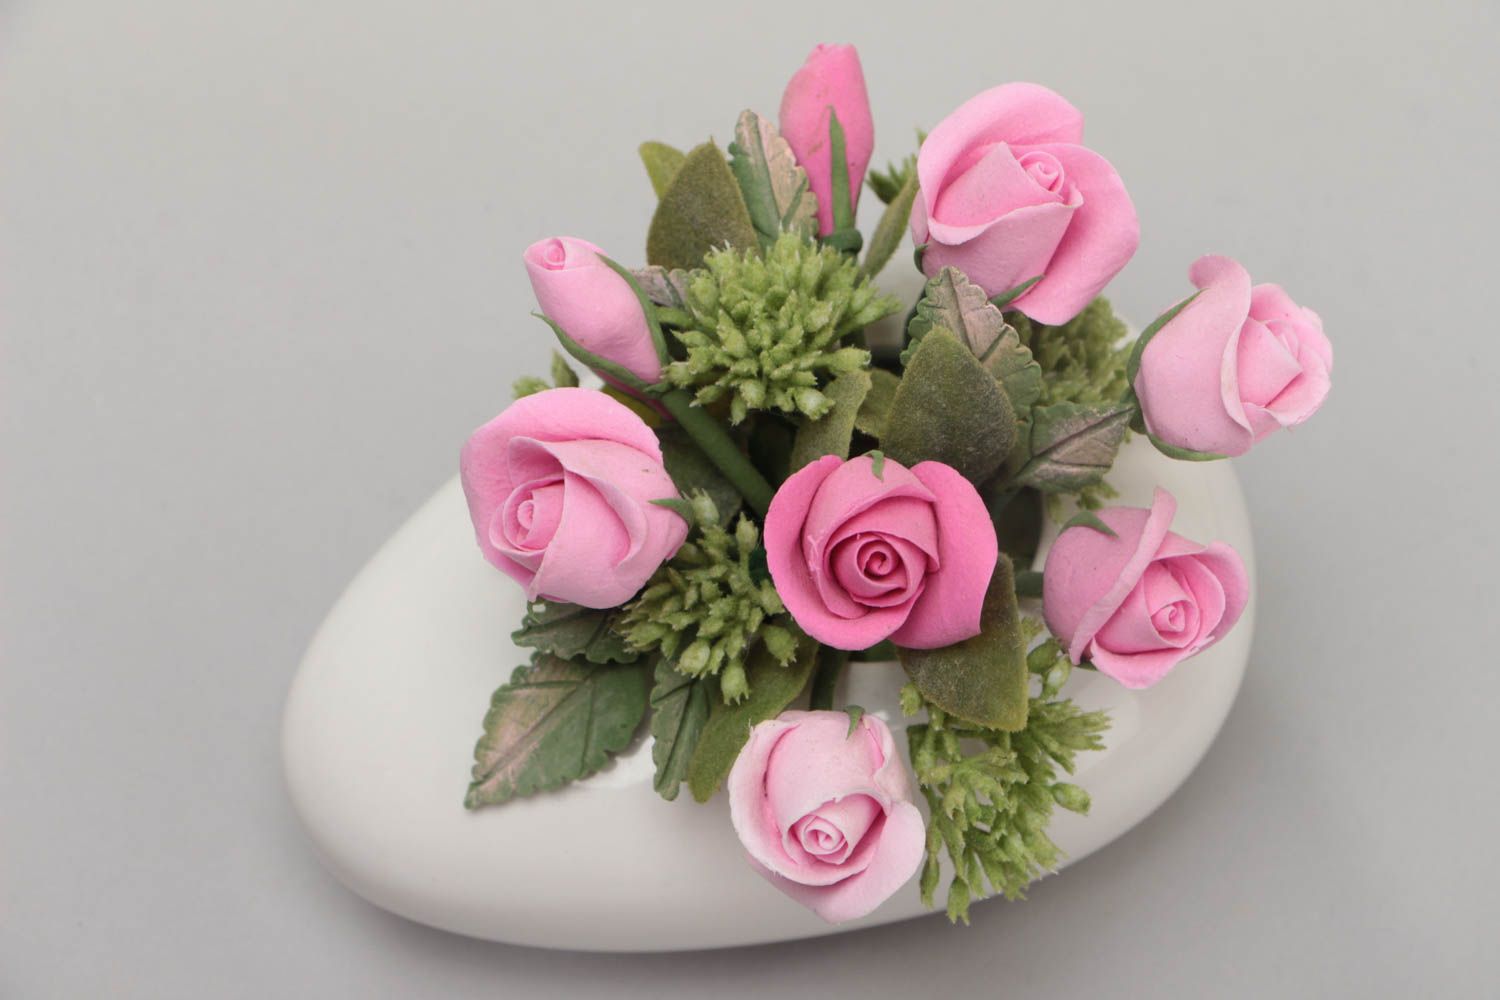 Цветы из японской полимерной глины в керамической вазе ручной работы розовые красивые фото 3